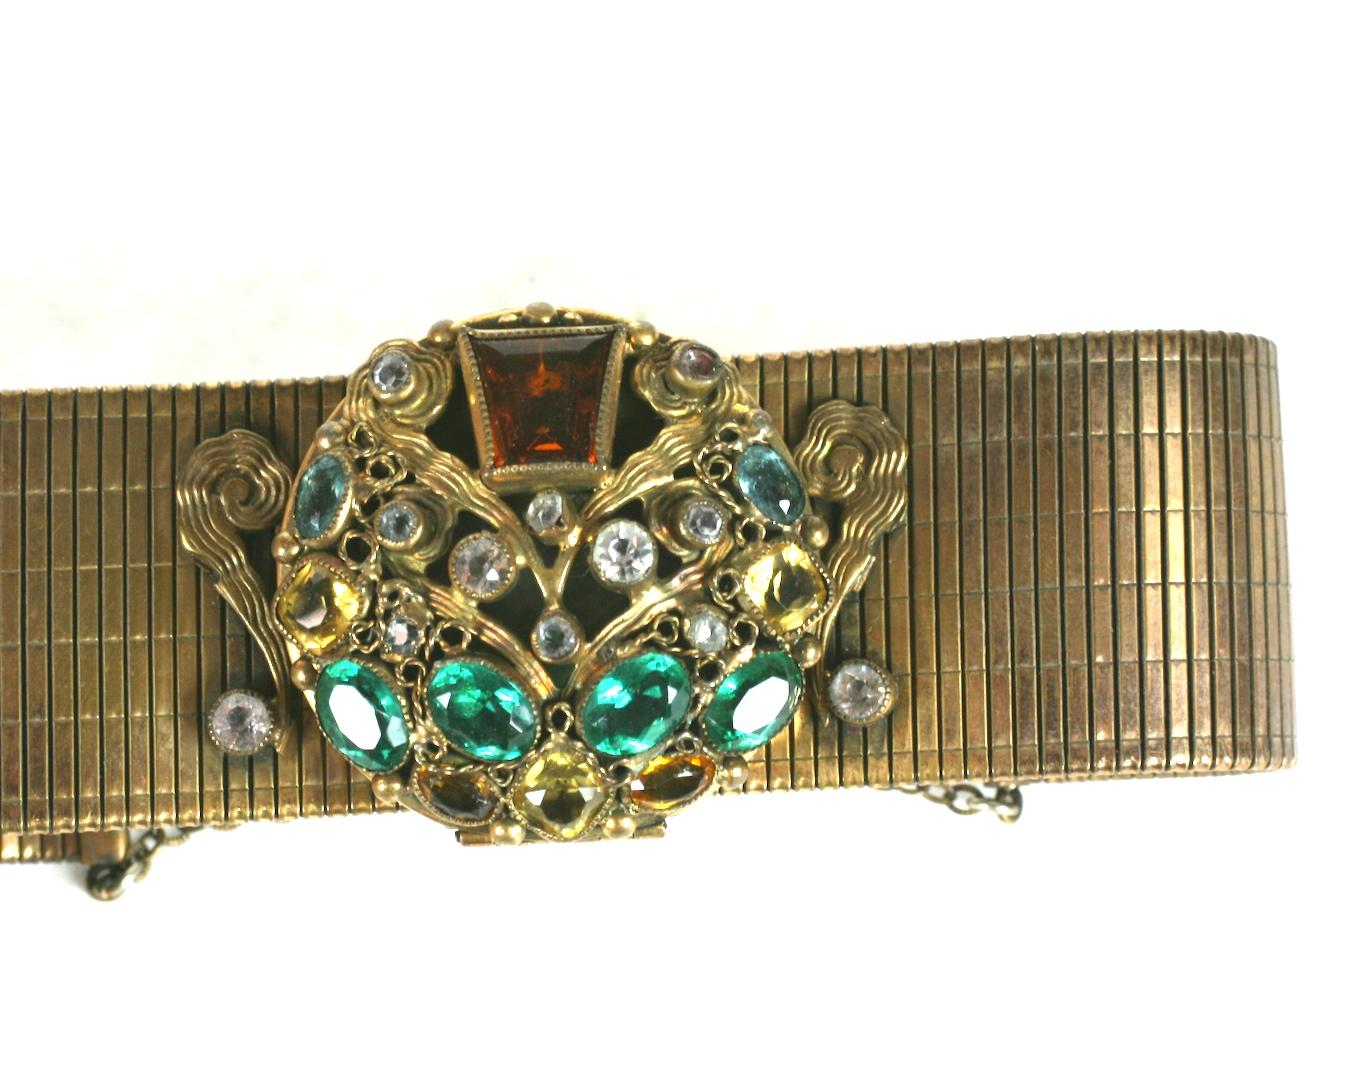 Ungewöhnliches Sandor Art Deco Compact Armband aus den 1930er Jahren mit einem juwelenbesetzten Gesicht. Pasten in Smaragd, Topas, Aqua und Citrin sind kunstvoll auf der Vorderseite der Puderdose angebracht.
Das zentrale Motiv ist auf einem